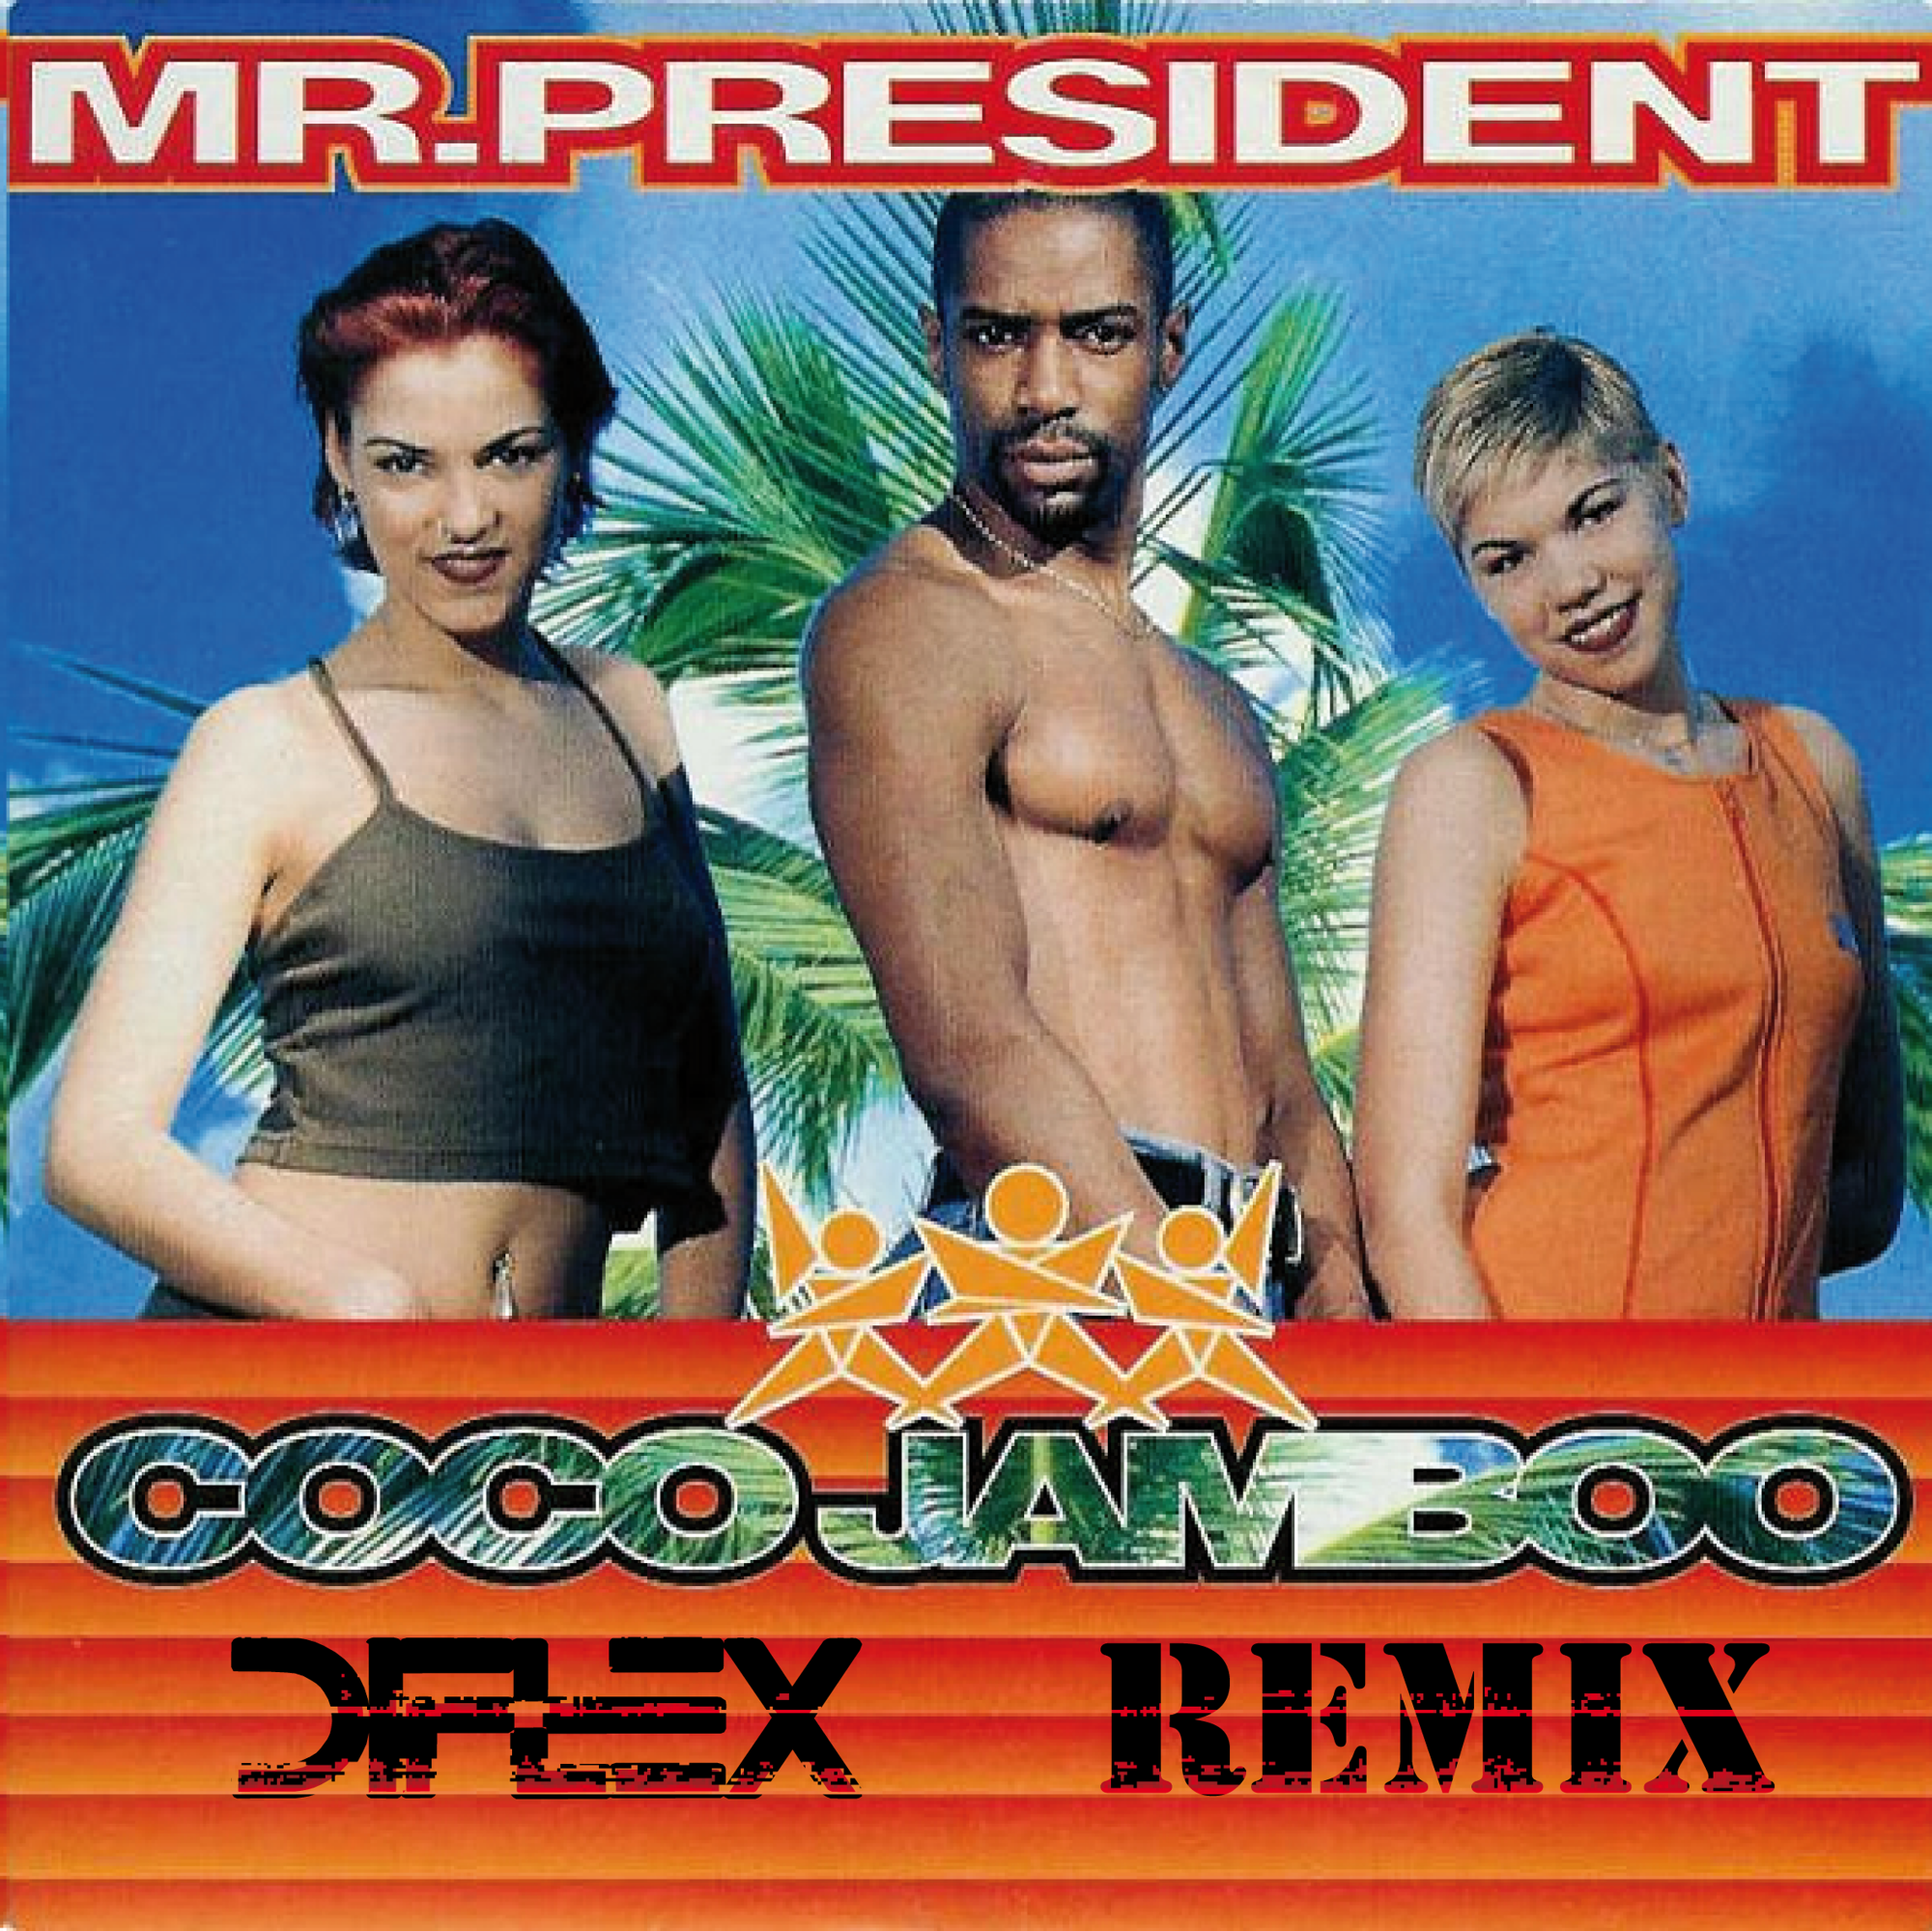 Яяя коко джамбо. Группа Mr. President. President - Coco Jamboo (1996). Mr. President обложка.